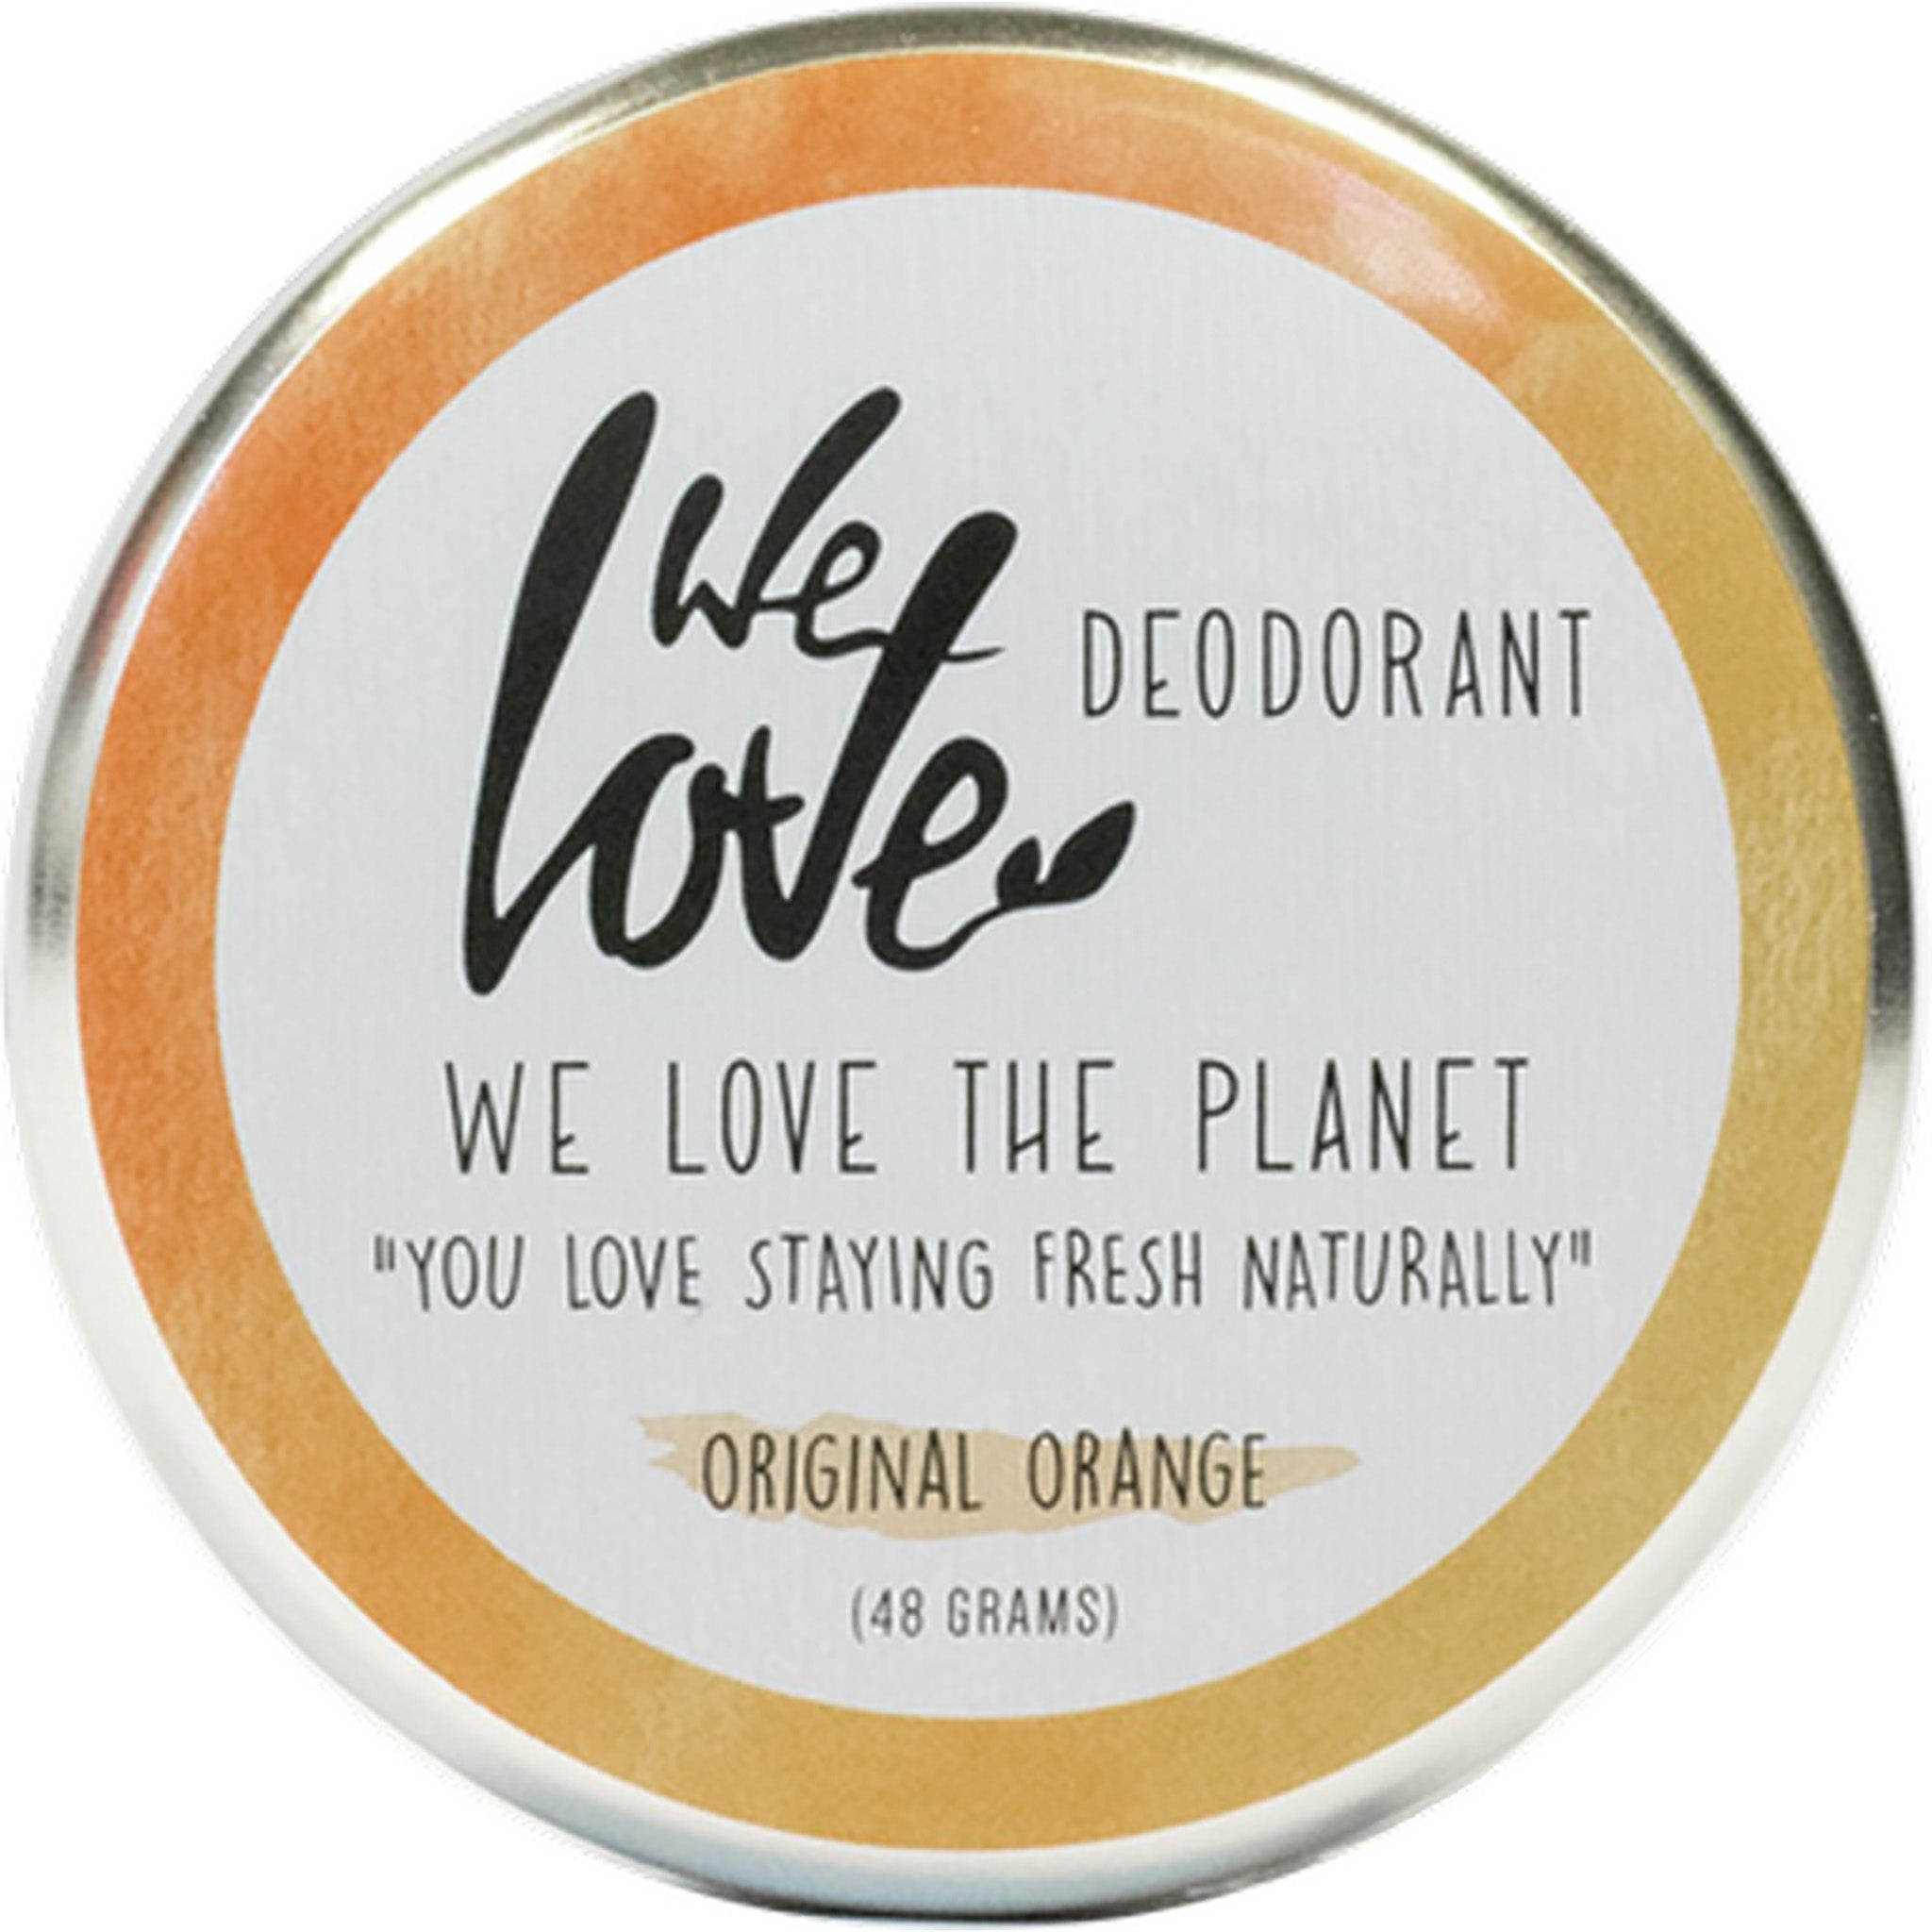 Natural Deodorant Cream | Original Orange - mypure.co.uk